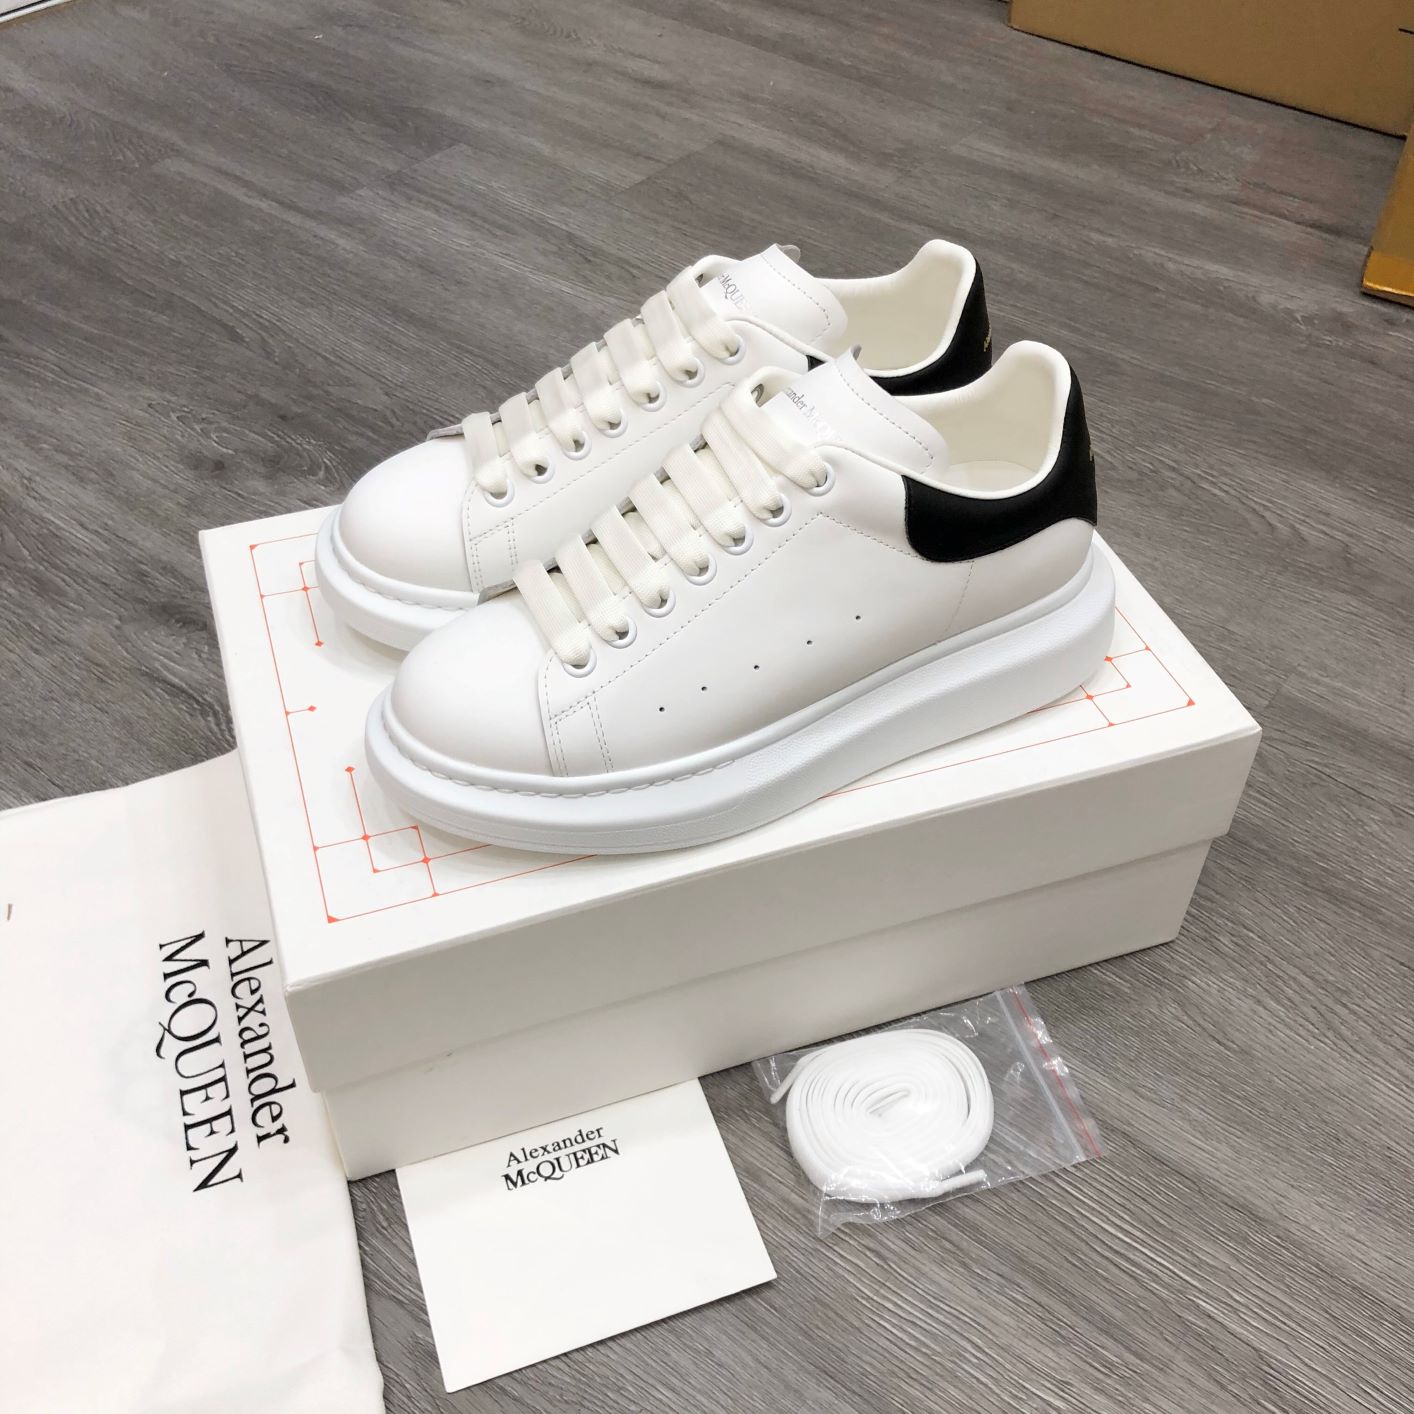 Giày Alexander MCQueen trắng gót đen hàng Siêu Cấp, LikeAuth tại HCM